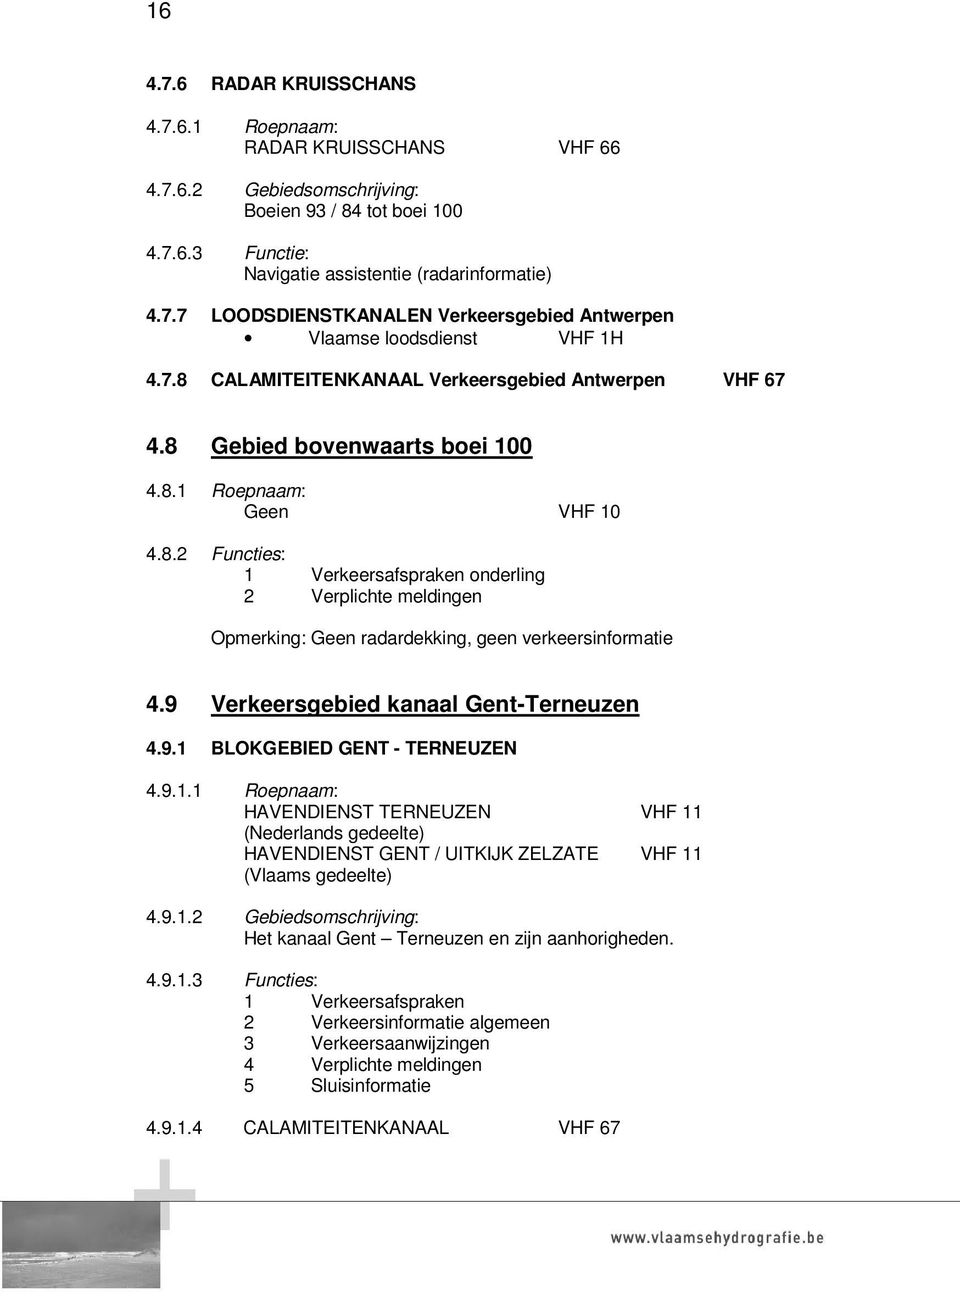 9 Verkeersgebied kanaal Gent-Terneuzen 4.9.1 BLOKGEBIED GENT - TERNEUZEN 4.9.1.1 Roepnaam: HAVENDIENST TERNEUZEN VHF 11 (Nederlands gedeelte) HAVENDIENST GENT / UITKIJK ZELZATE VHF 11 (Vlaams gedeelte) 4.